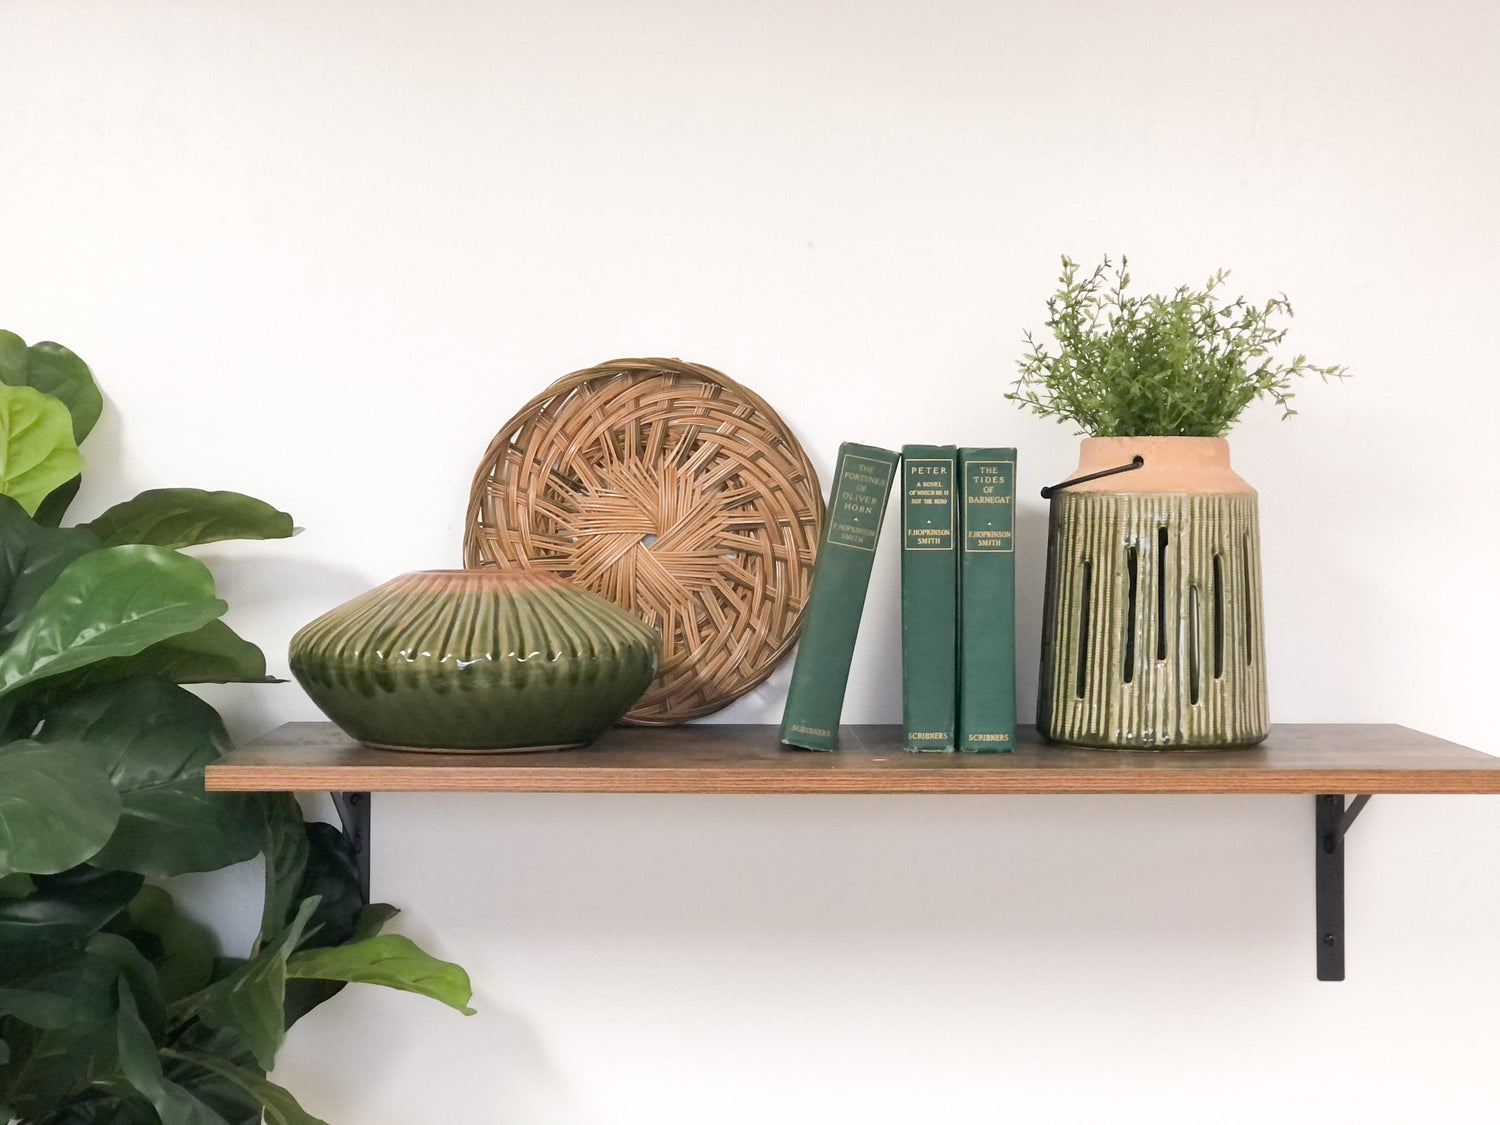 Green Home Decor / Shelf Decor including Decorative Books and Vintage Items